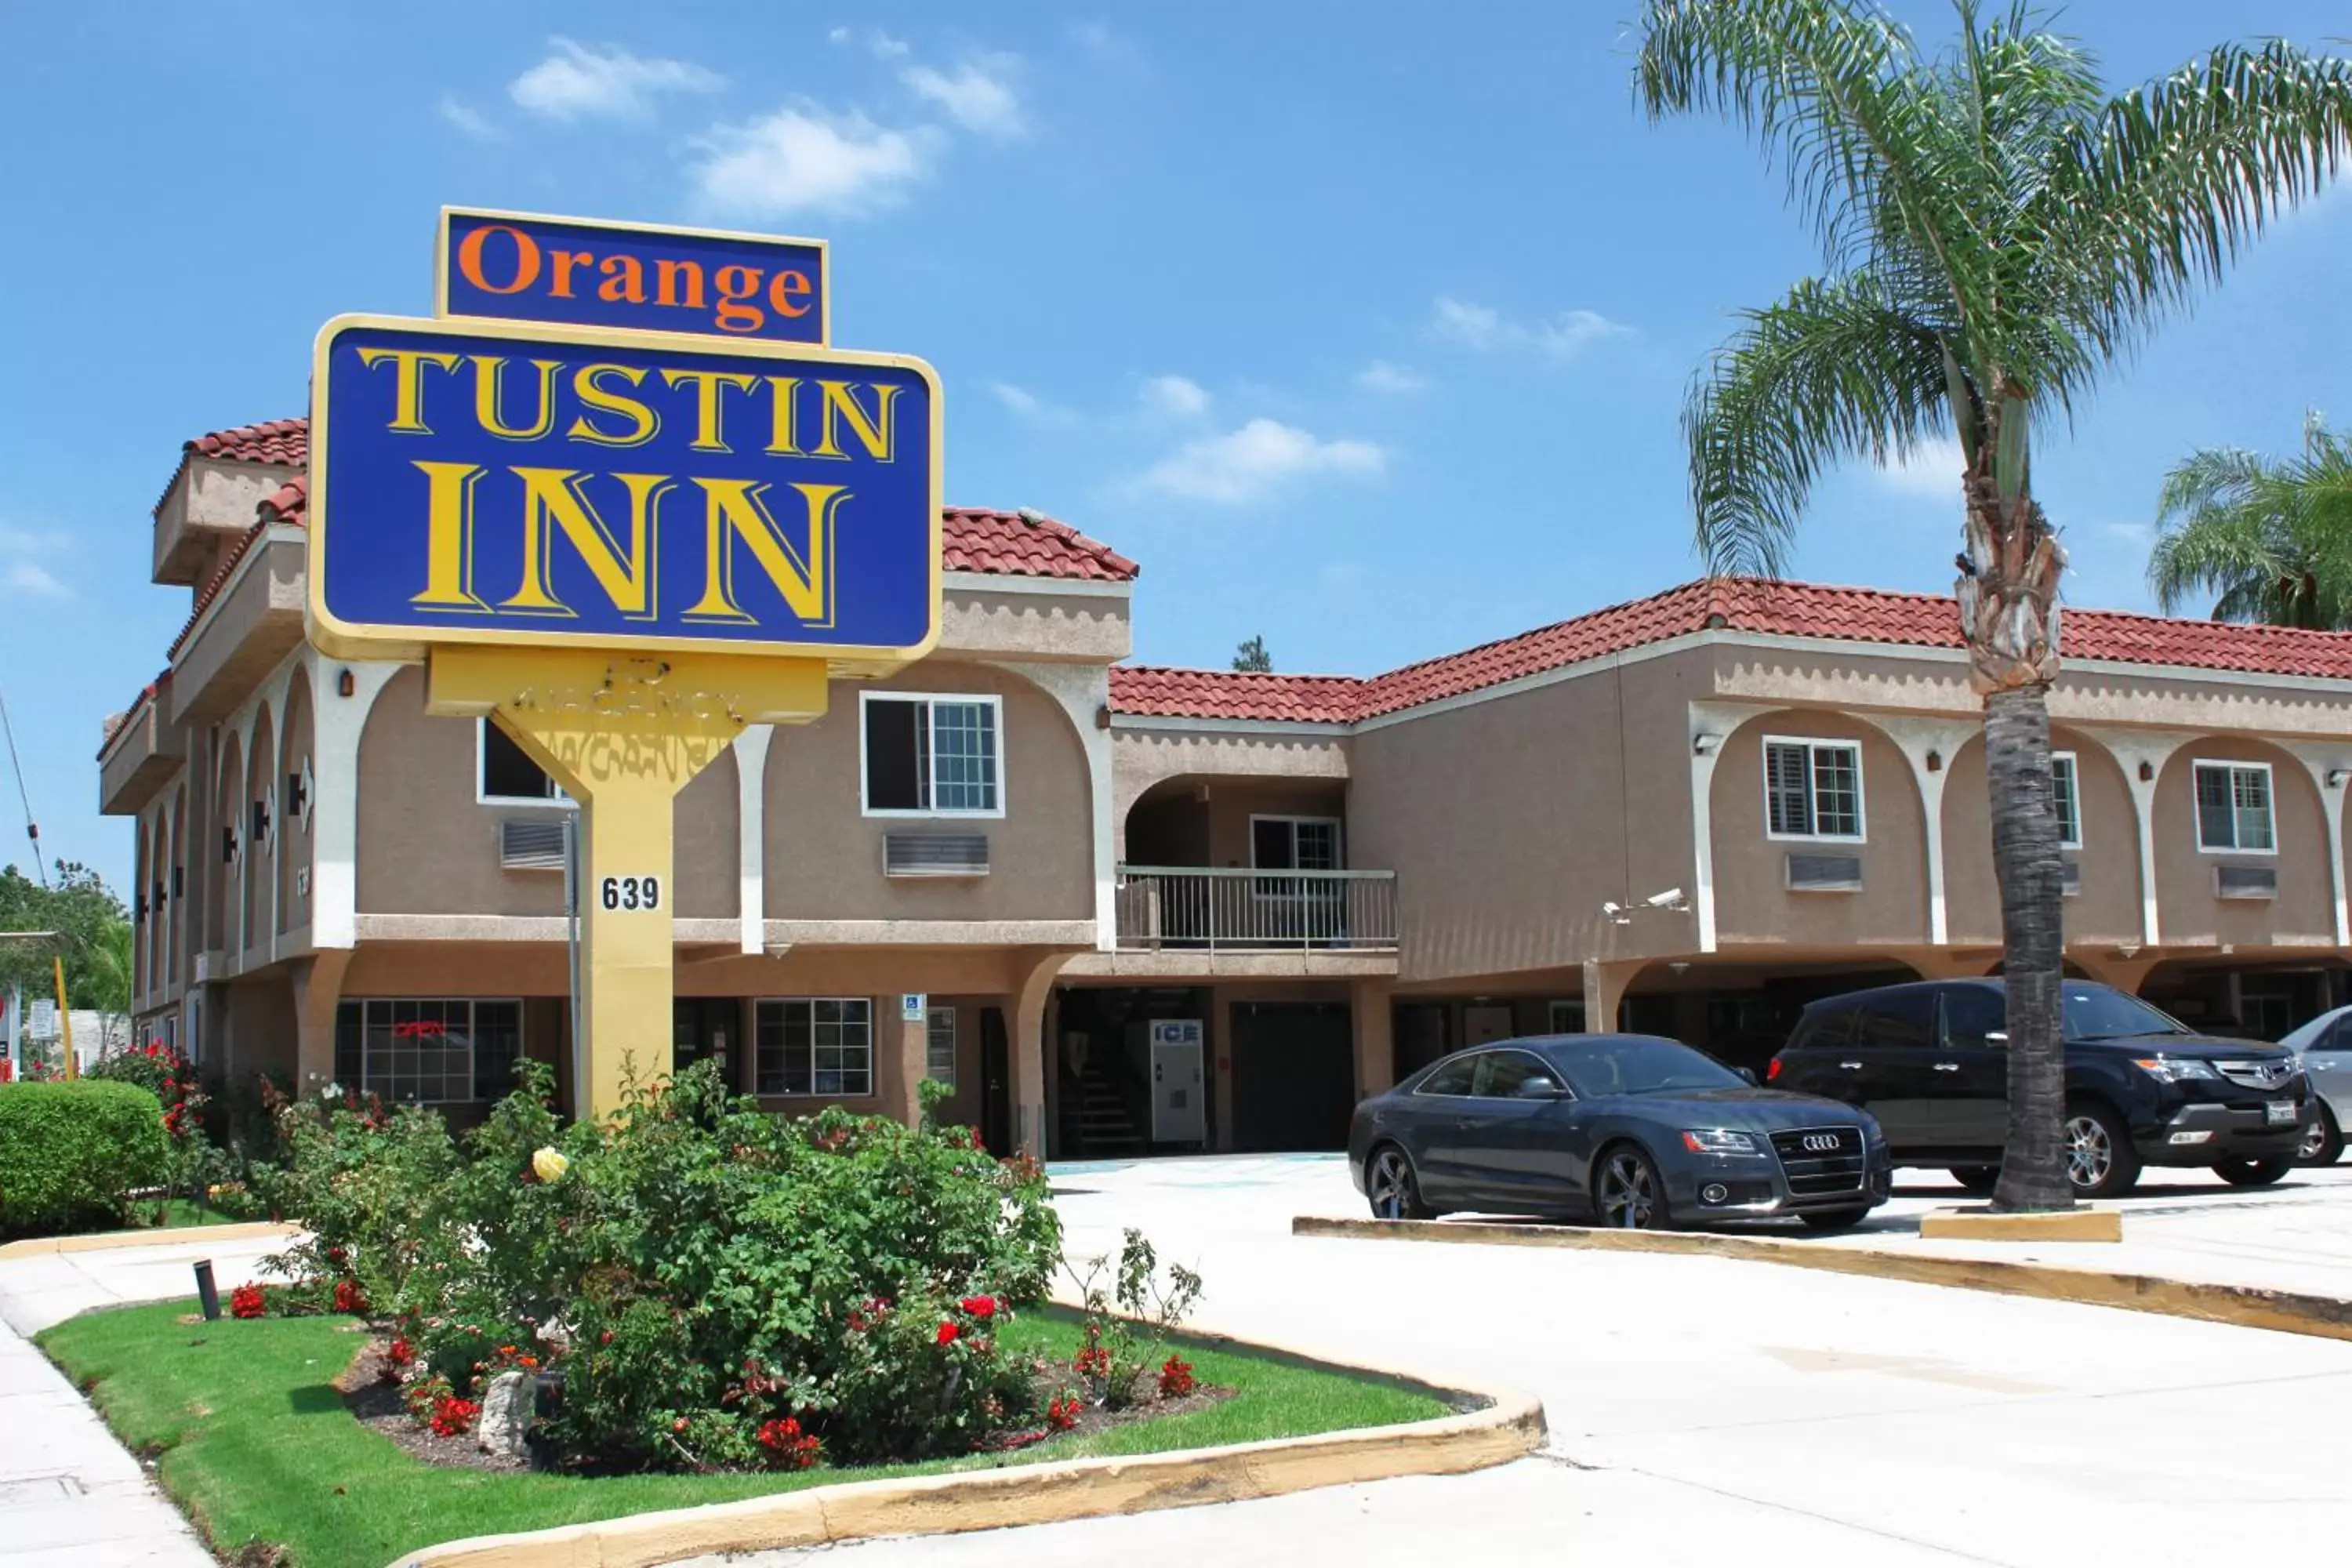 Property Building in Orange Tustin Inn in Orange